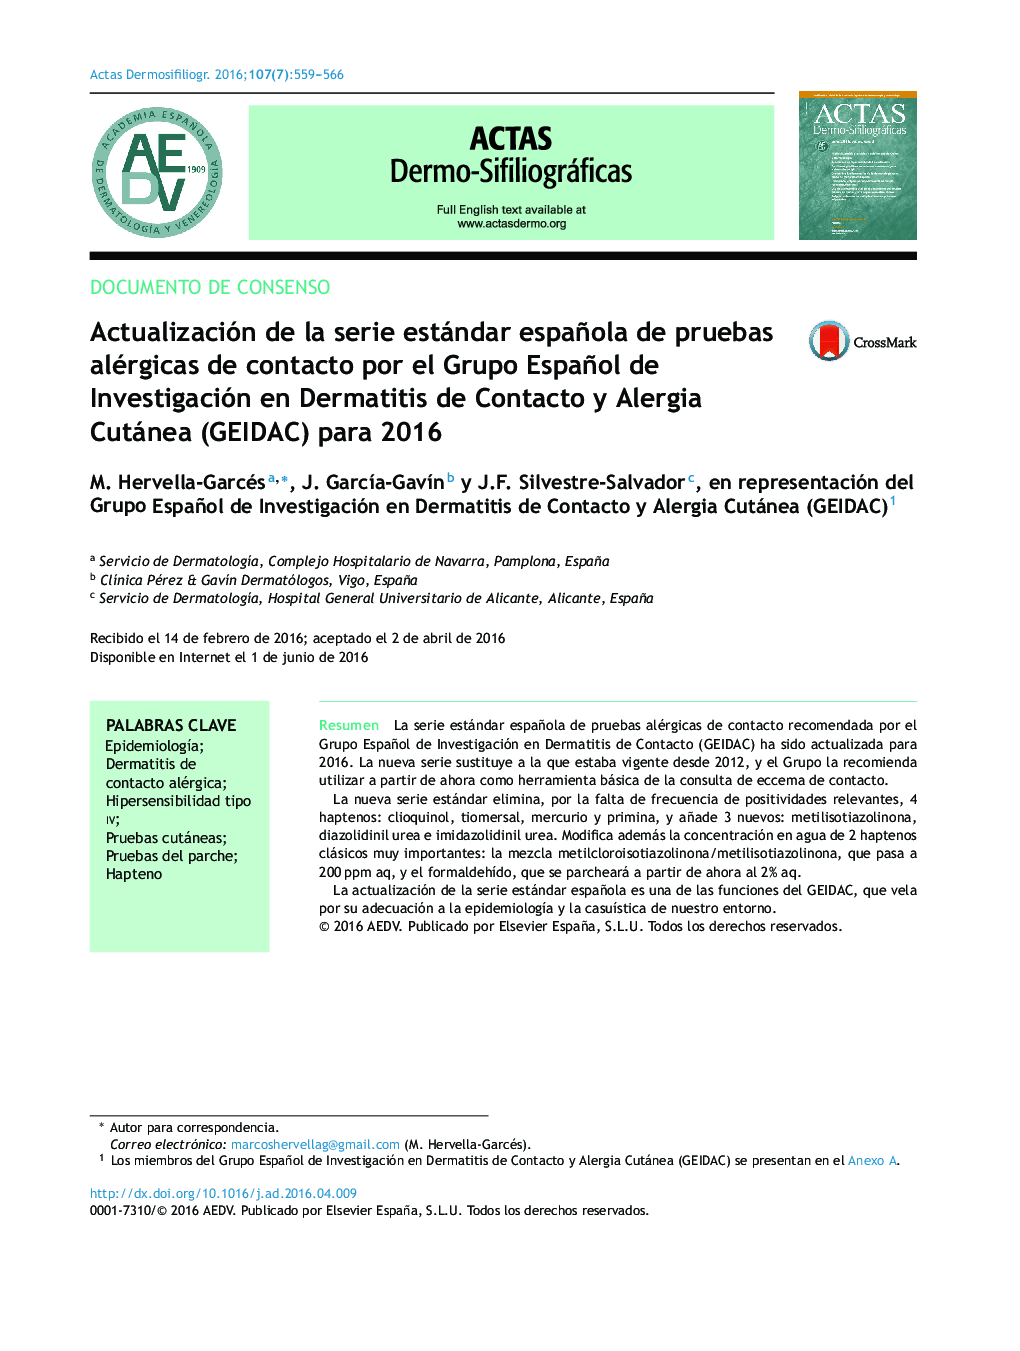 Actualización de la serie estándar española de pruebas alérgicas de contacto por el Grupo Español de Investigación en Dermatitis de Contacto y Alergia Cutánea (GEIDAC) para 2016